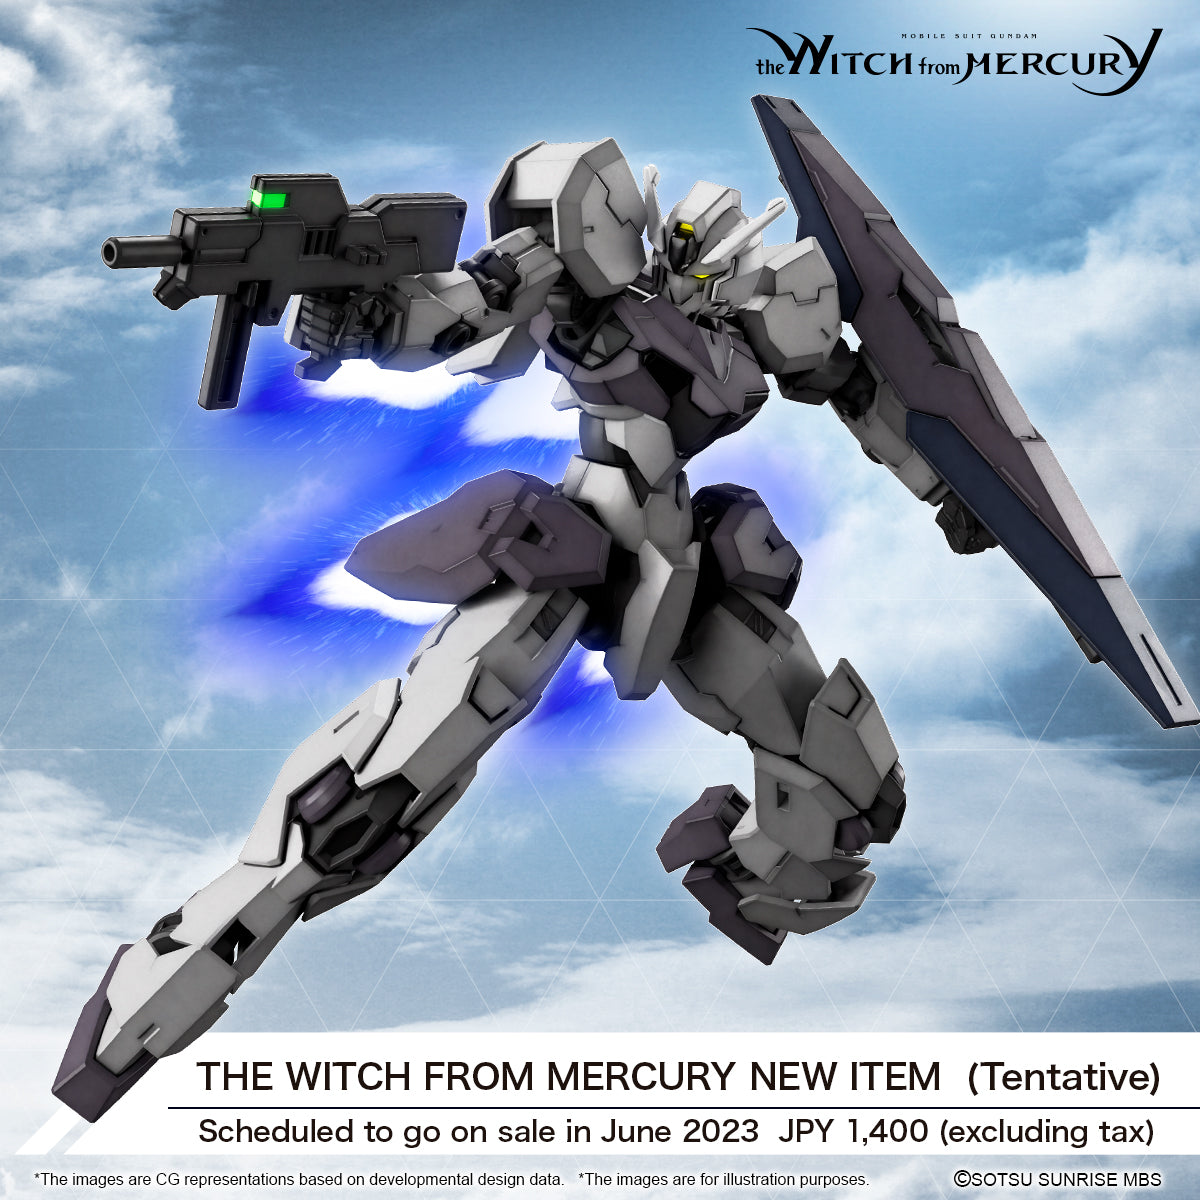 HG 1/144 Gundvolva (Gundam: The Witch from Mercury) model kit